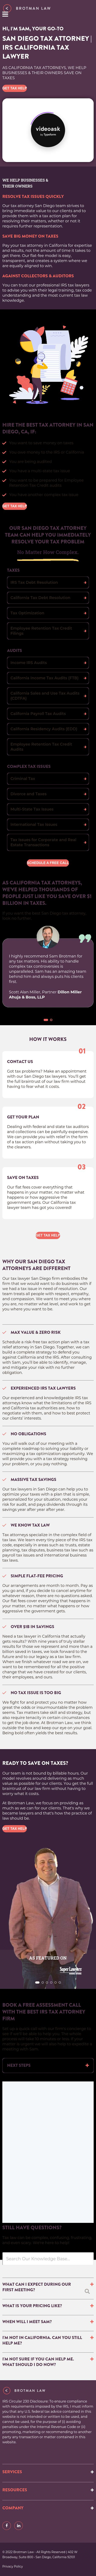 Brotman Law - San Diego CA Lawyers